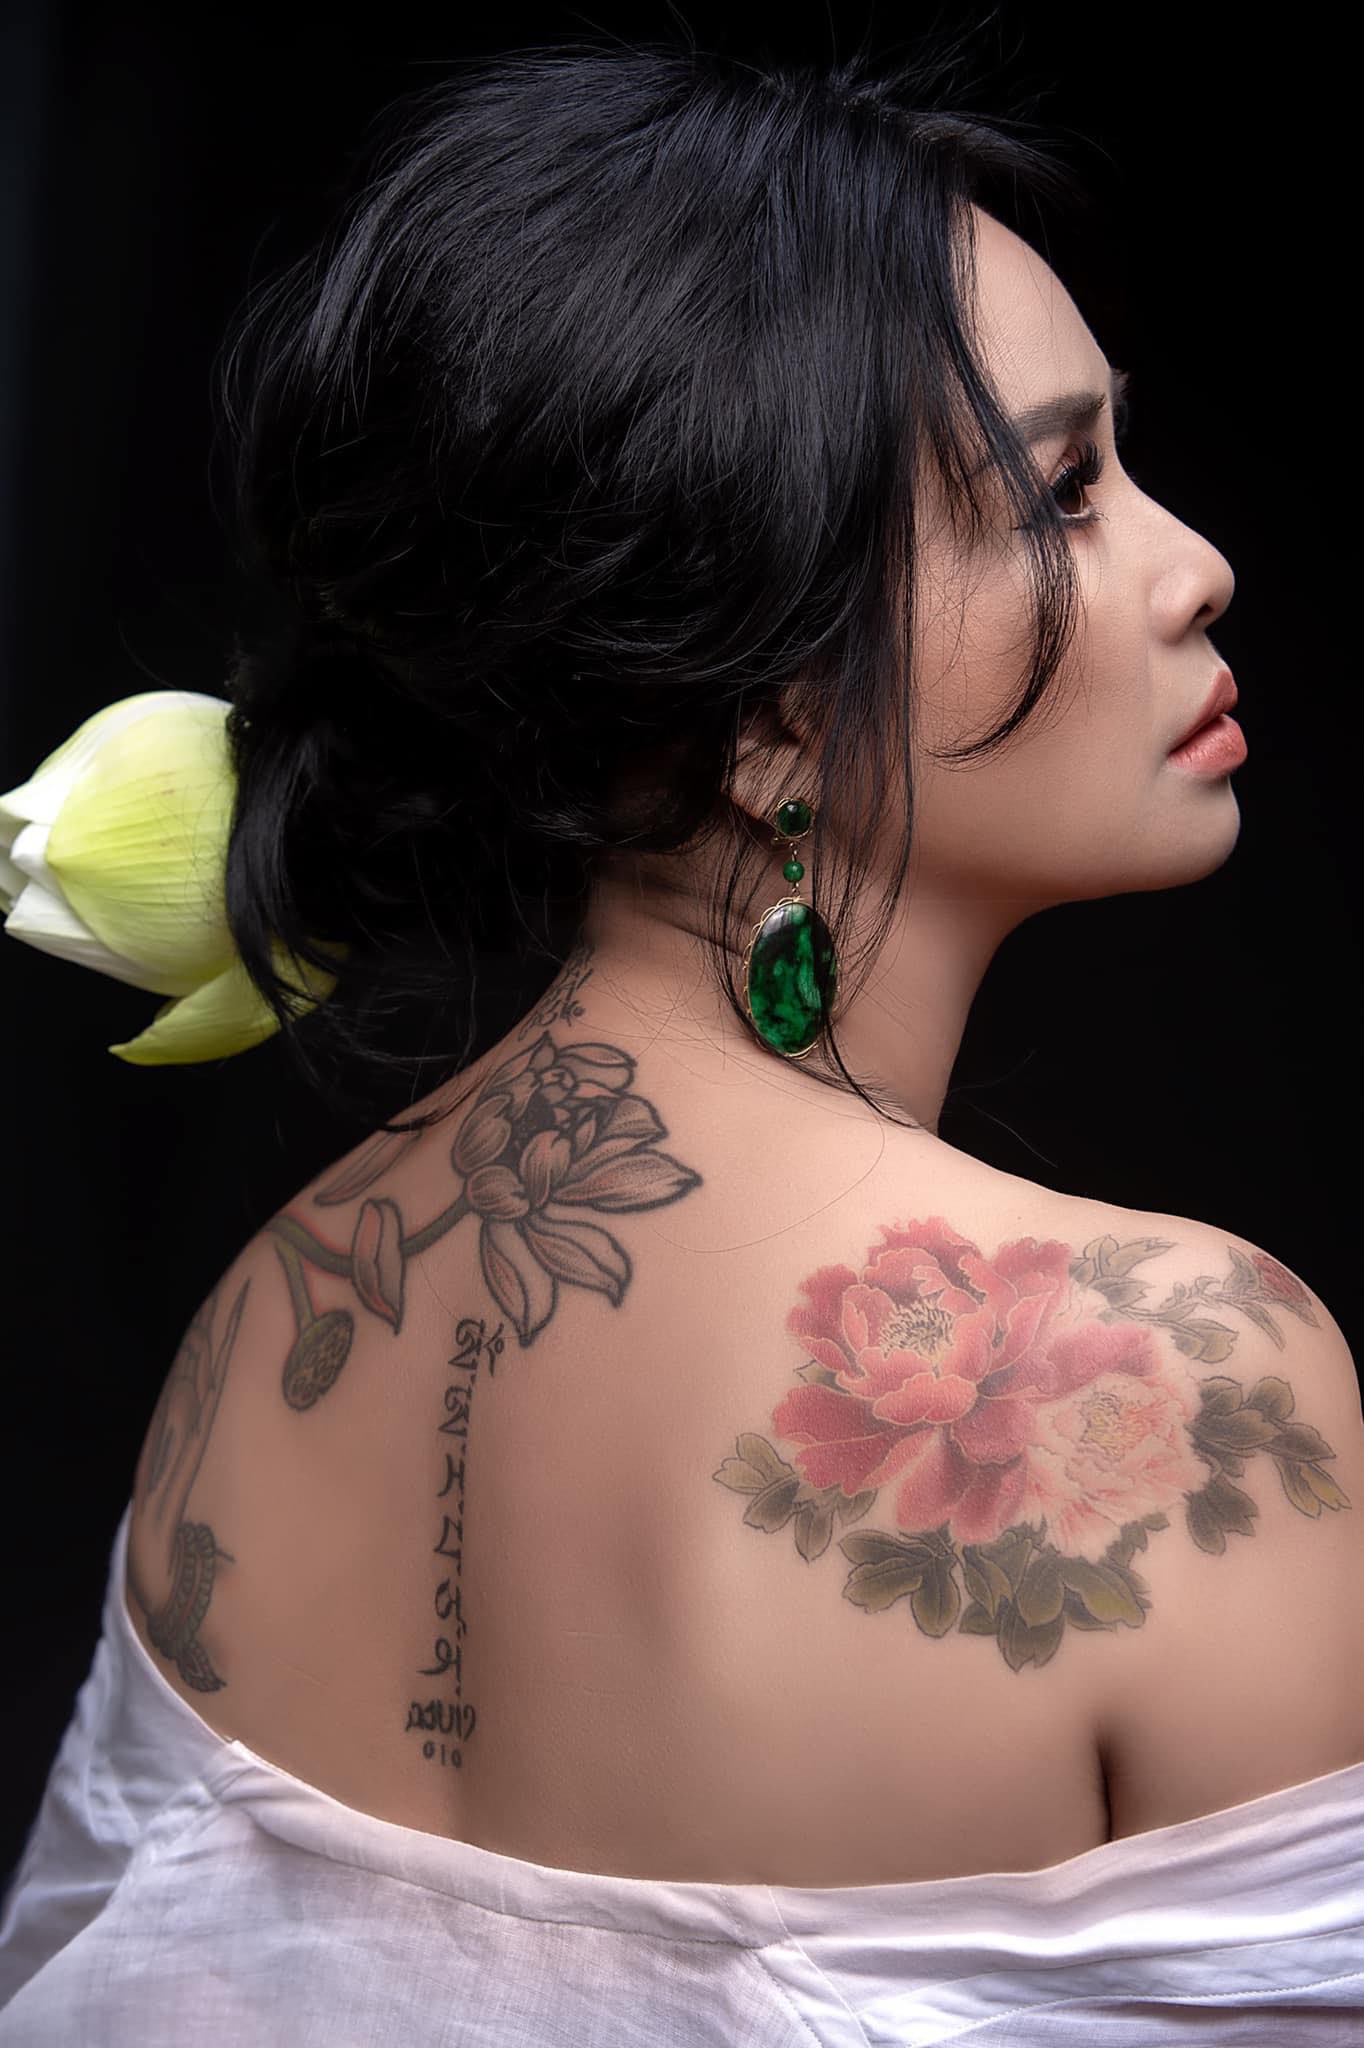 LamTV  Lần Đầu Theo Thằng Em Đi Xăm Mình  Tattoo Xăm Hình Mặt Quỷ Ở Lưng   YouTube